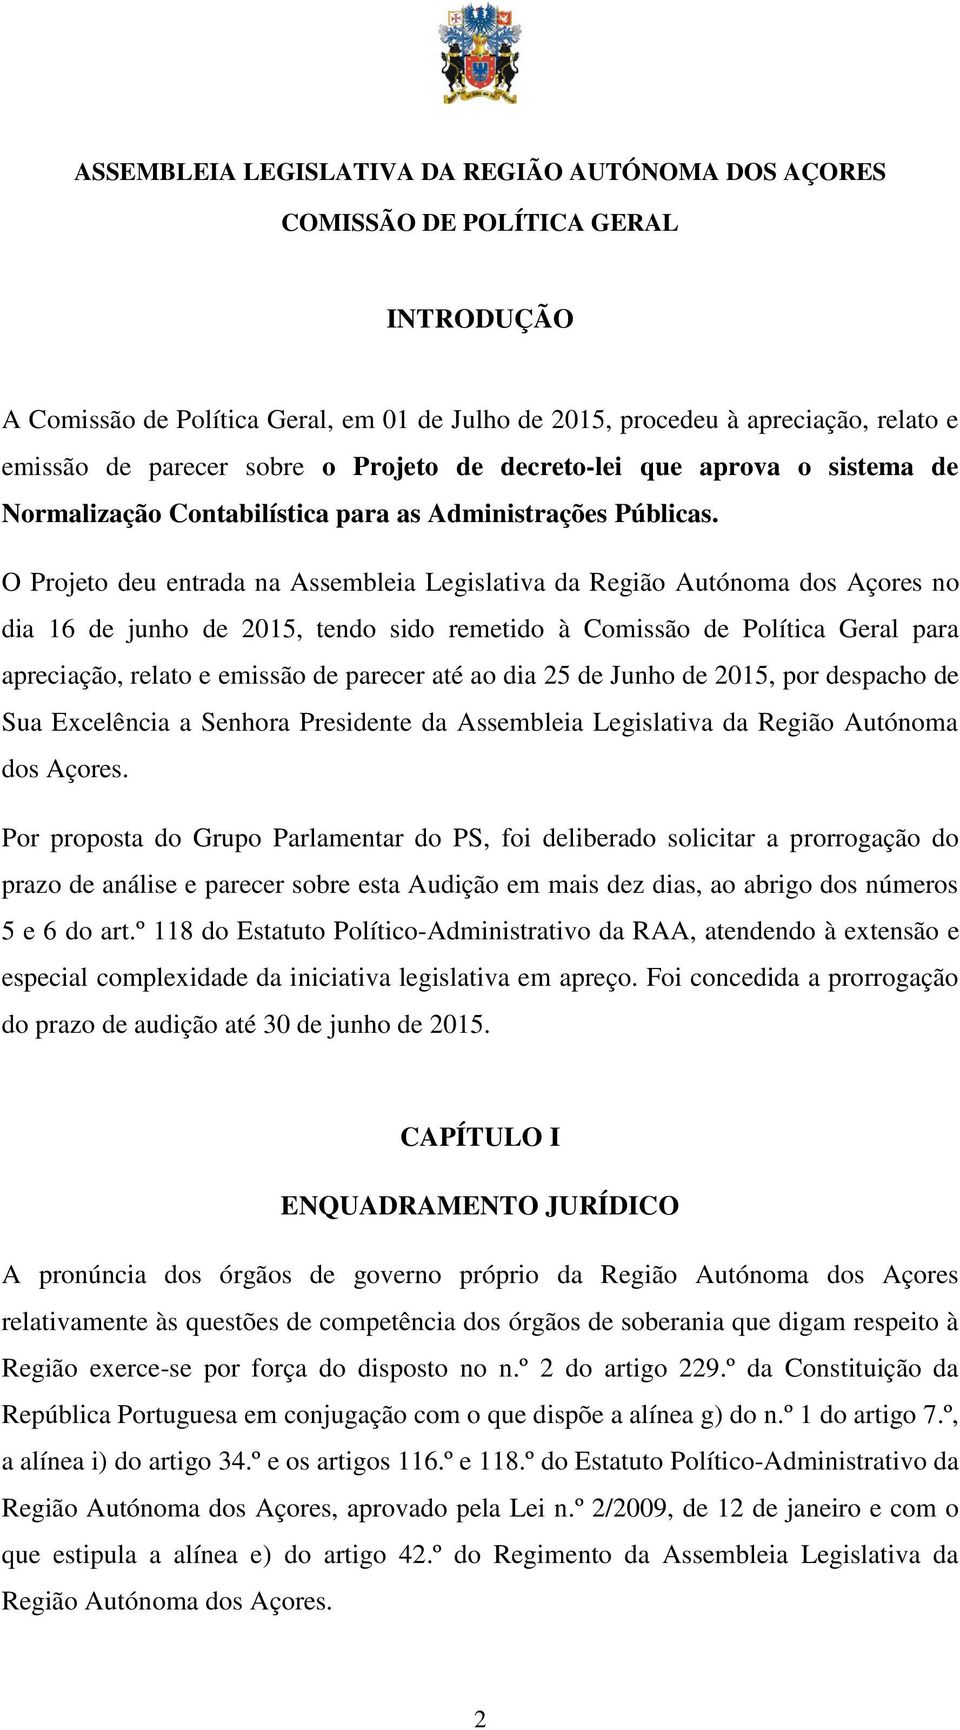 O Projeto deu entrada na Assembleia Legislativa da Região Autónoma dos Açores no dia 16 de junho de 2015, tendo sido remetido à Comissão de Política Geral para apreciação, relato e emissão de parecer